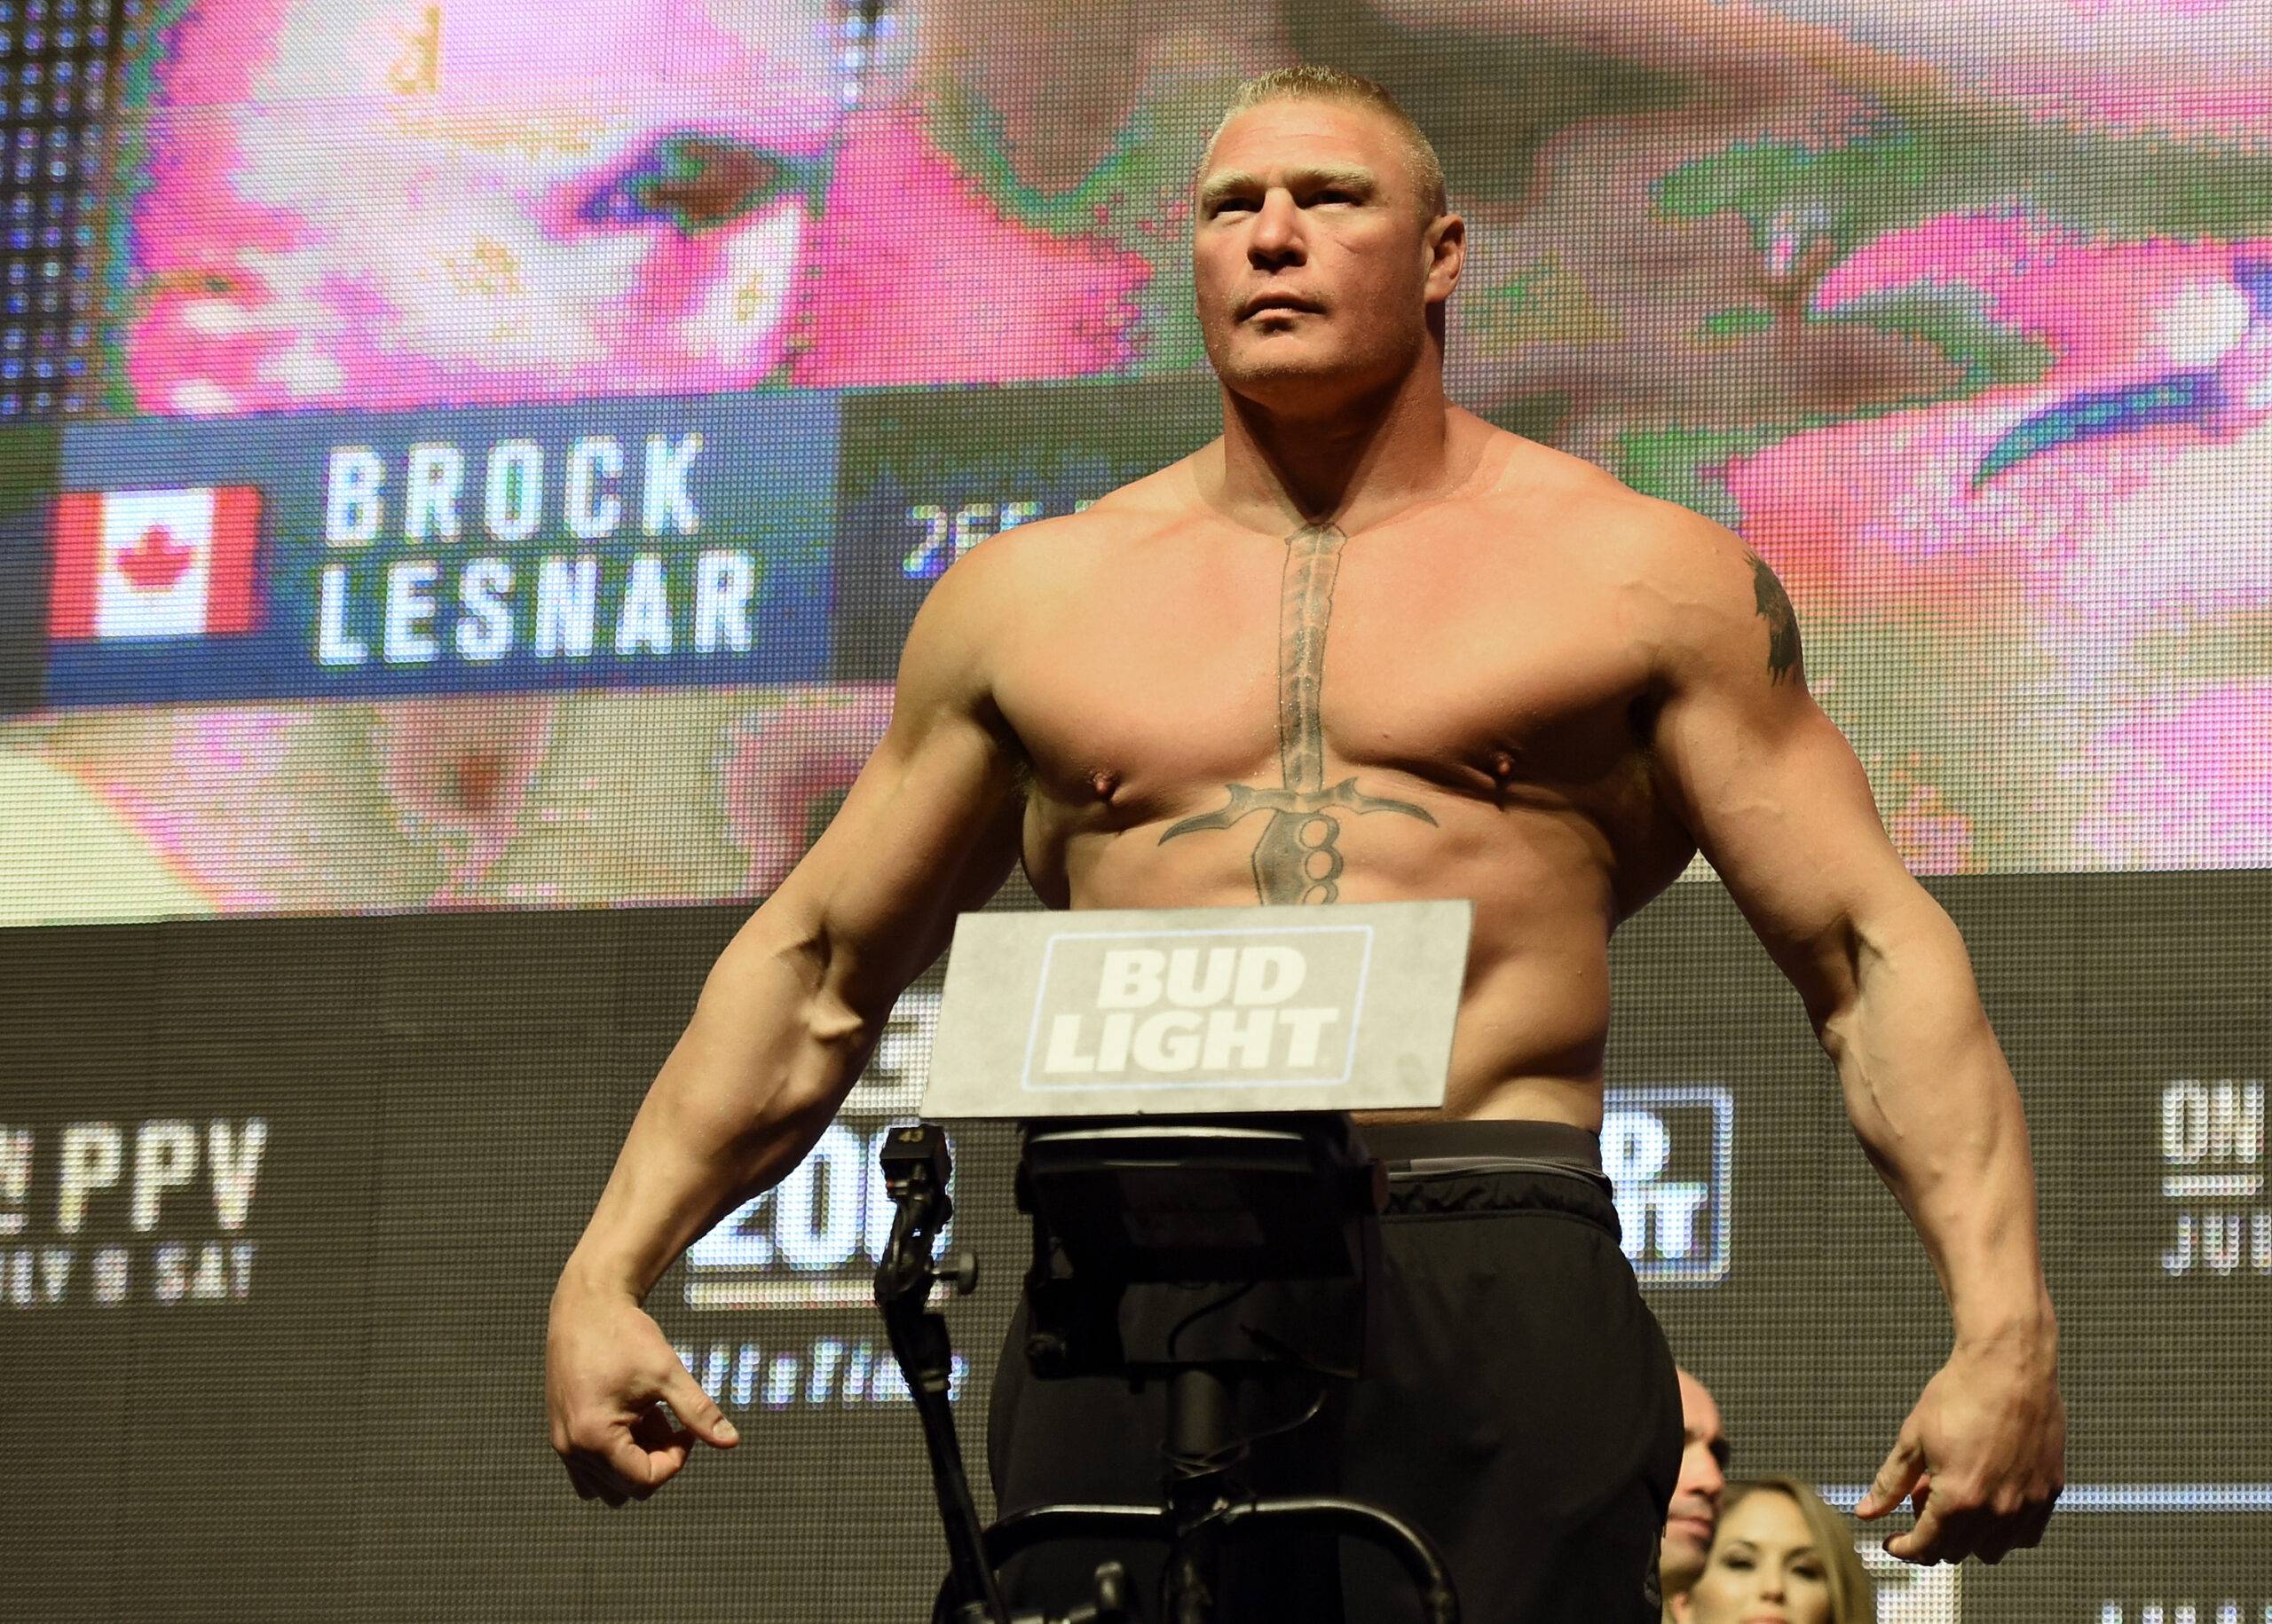 Brock Lesnar's UFC 141 weigh-in got a great reaction from Joe Rogan